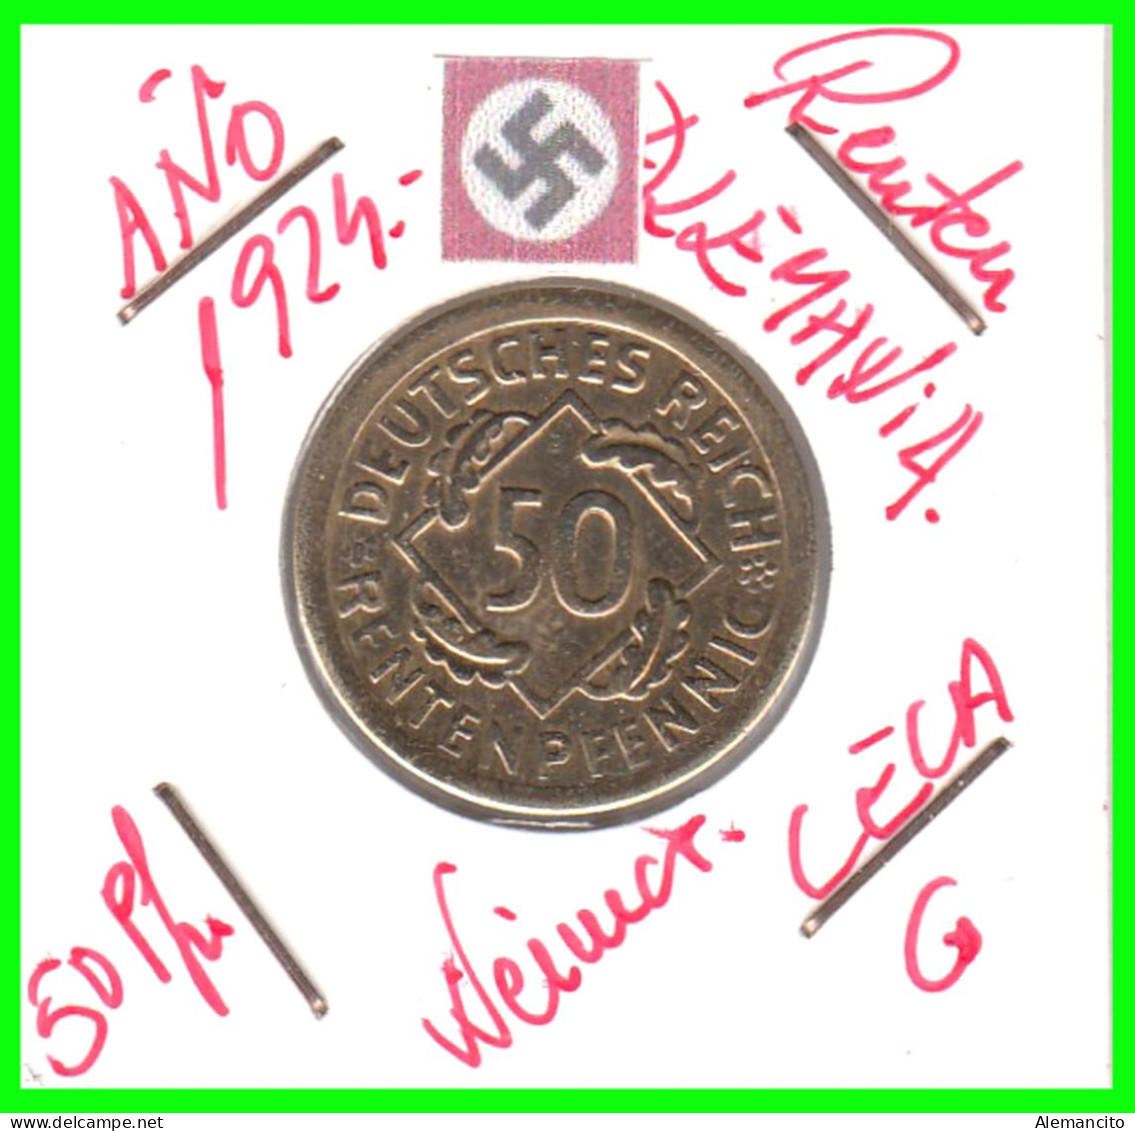 GERMANY REPÚBLICA DE WEIMAR 50 PFENNIG DE PENSIÓN ( 1924 CECA - G ) MONEDA DEL AÑO 1923-1925 (RENTEN PFENNIG KM # 32 - 50 Renten- & 50 Reichspfennig